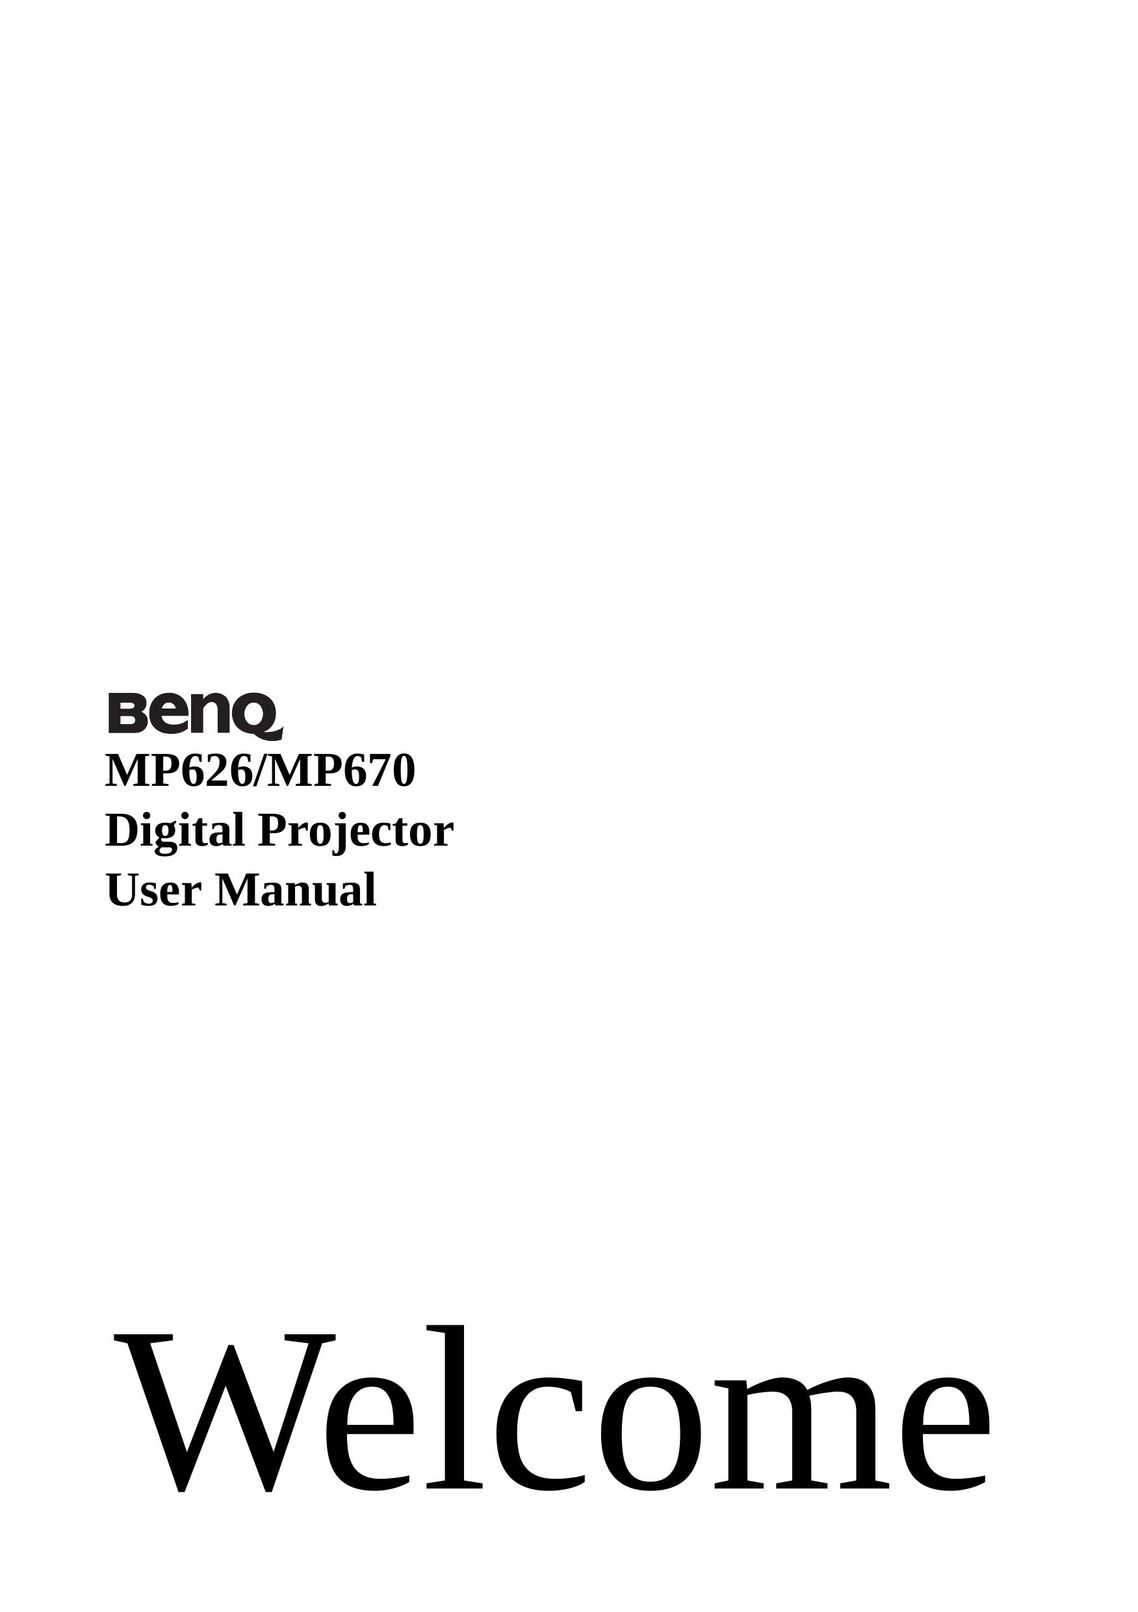 BenQ MP670 Projector User Manual